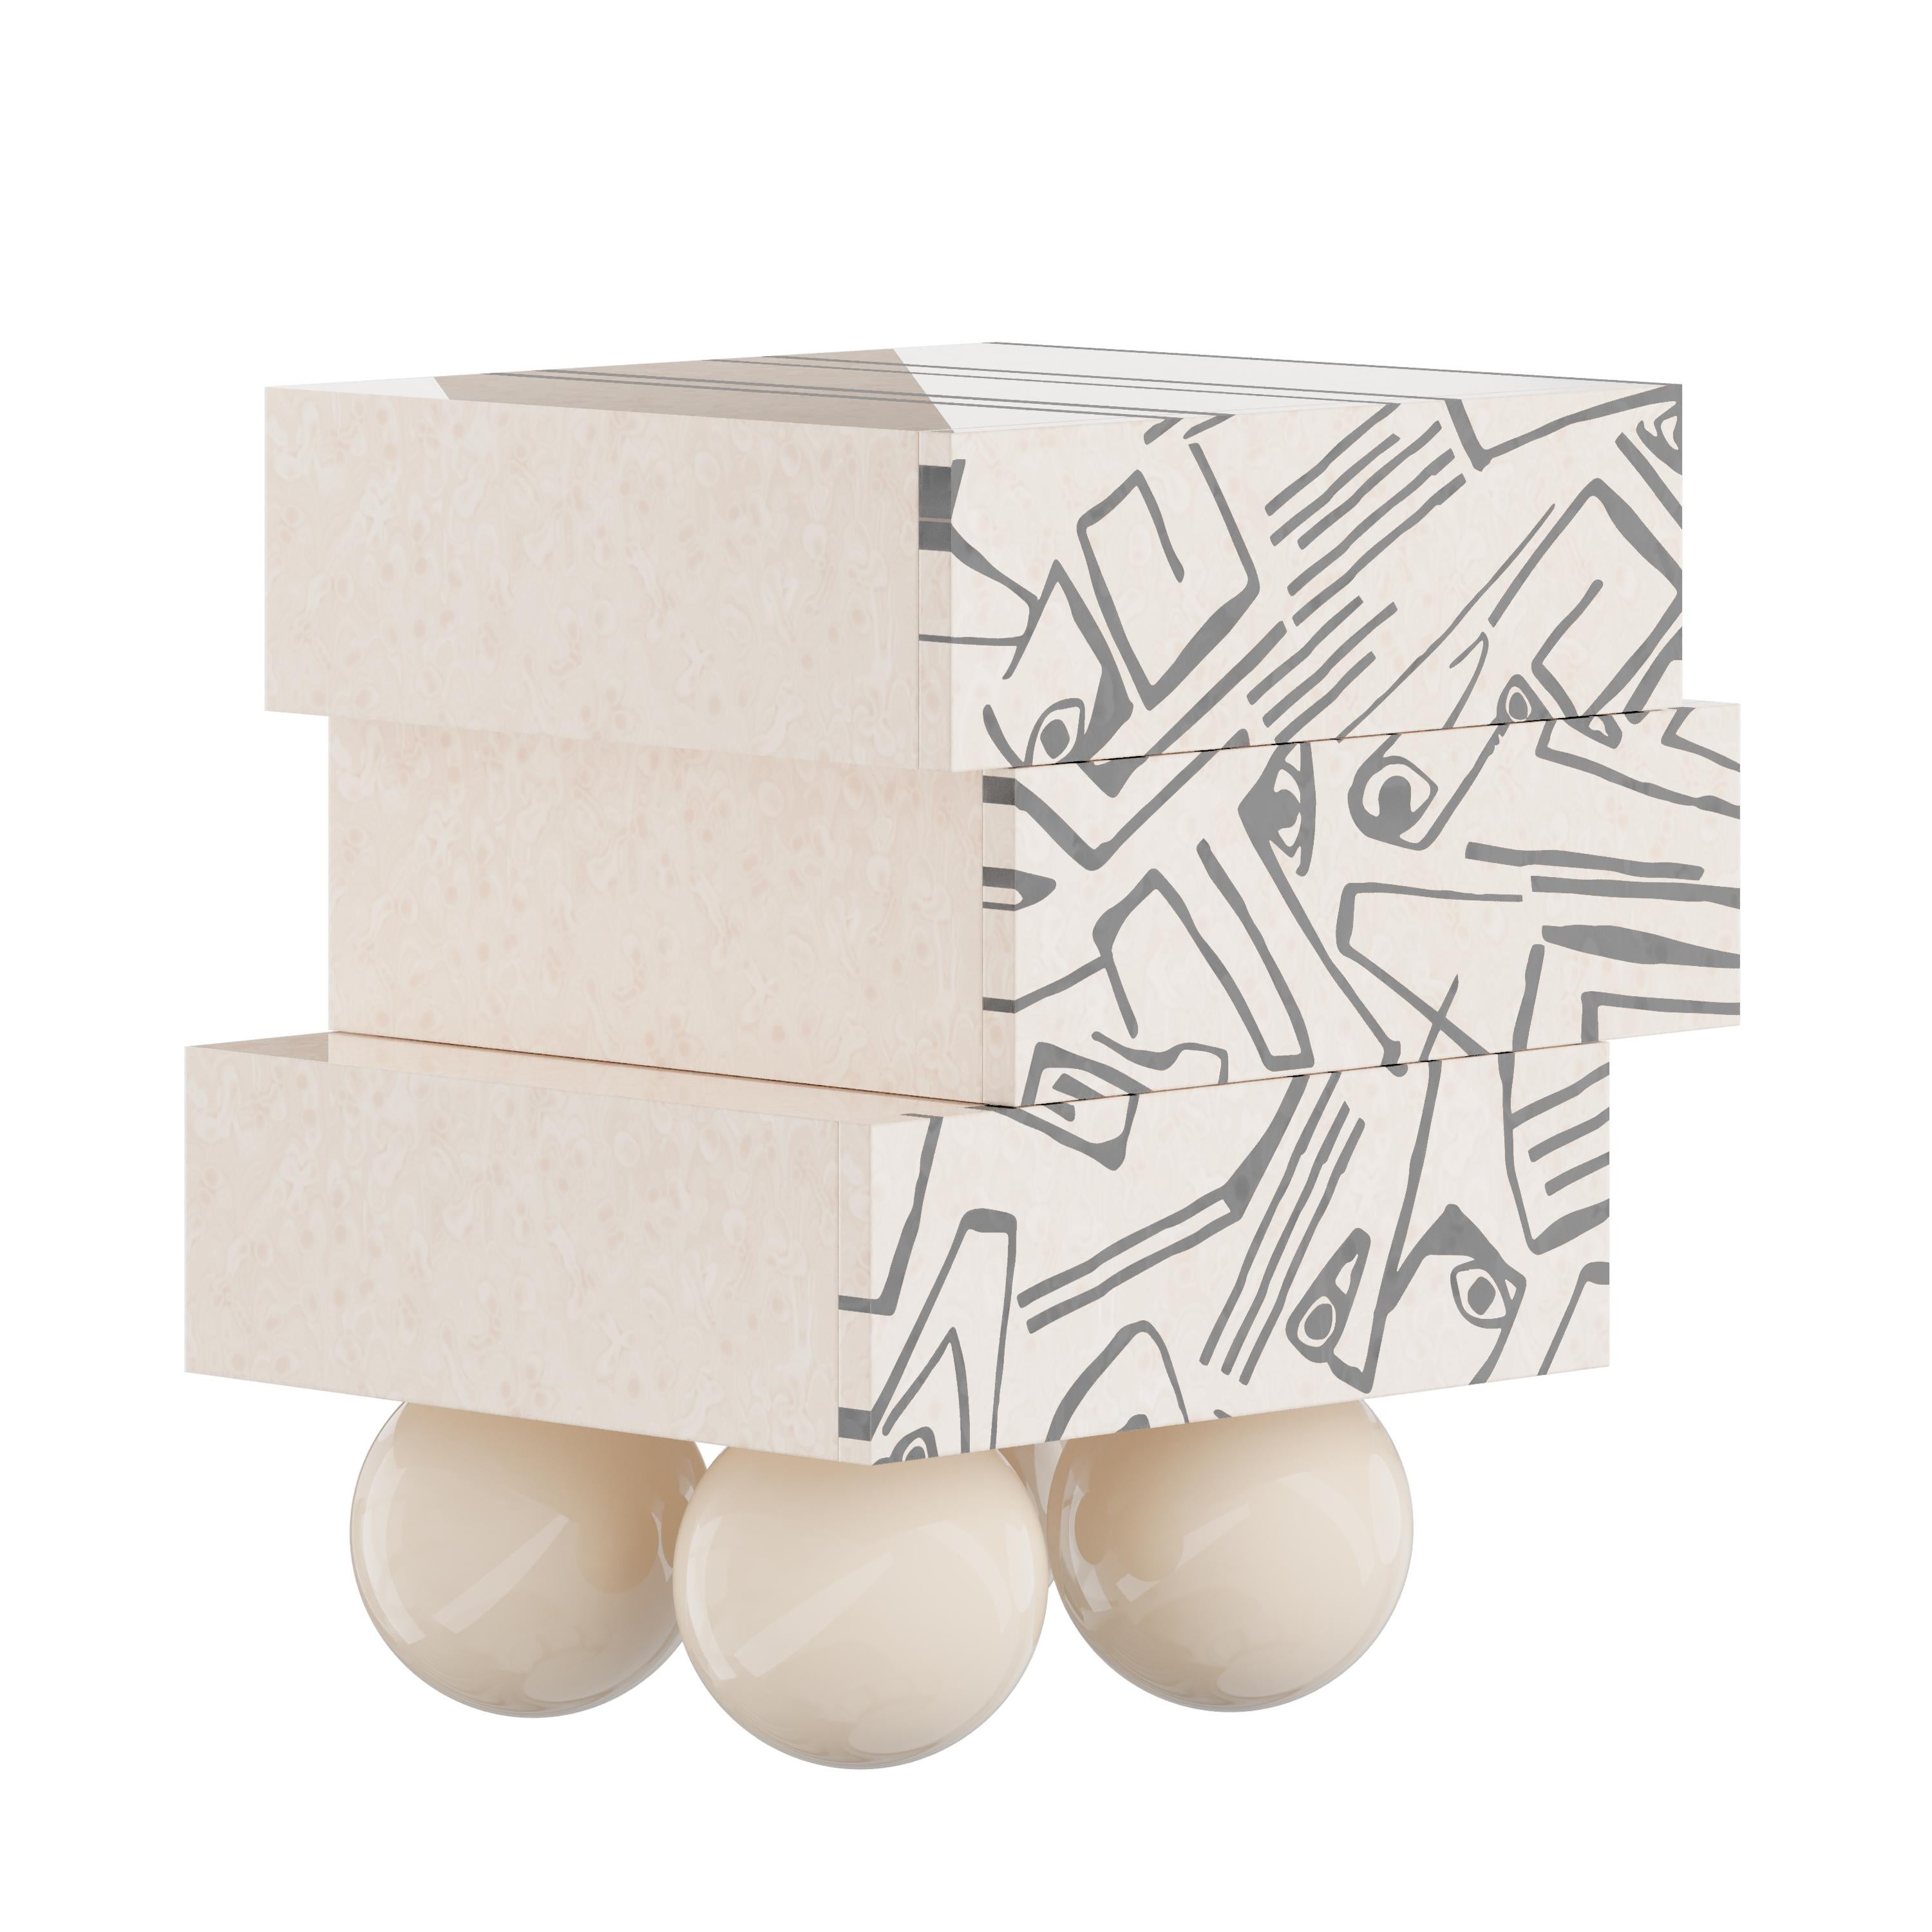 La table de chevet Malaga est la table de chevet cubiste parfaite pour un projet de chambre à coucher minimal. Sa silhouette dynamique présente trois tiroirs reposant sur quatre pieds de sphères en bois. Le design géométrique frappant de cette table